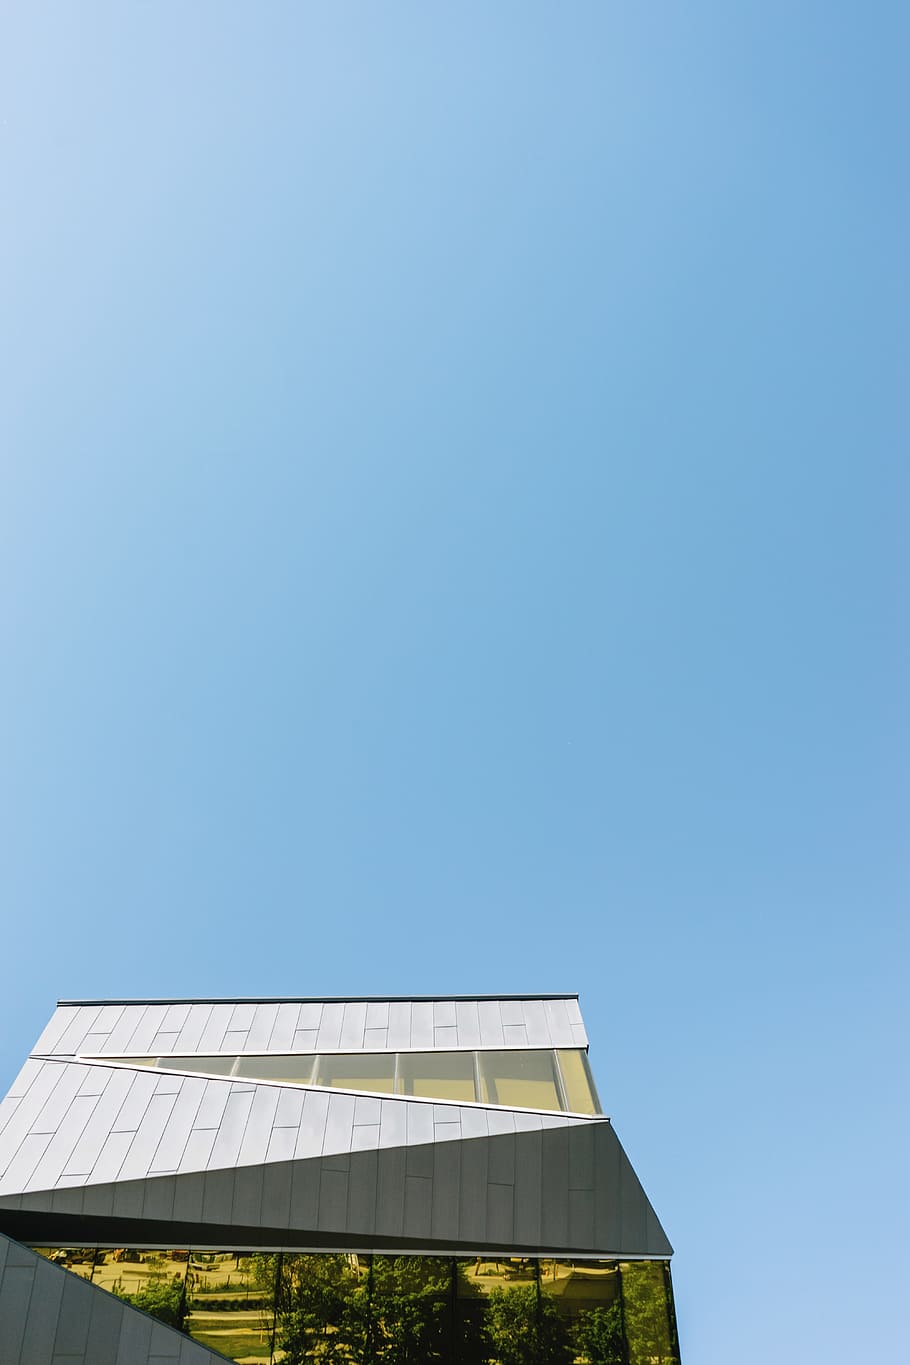 gris, concreto, edificio, azul, cielo, mínimo, minimalismo, minimalista, arquitectura, espacio negativo